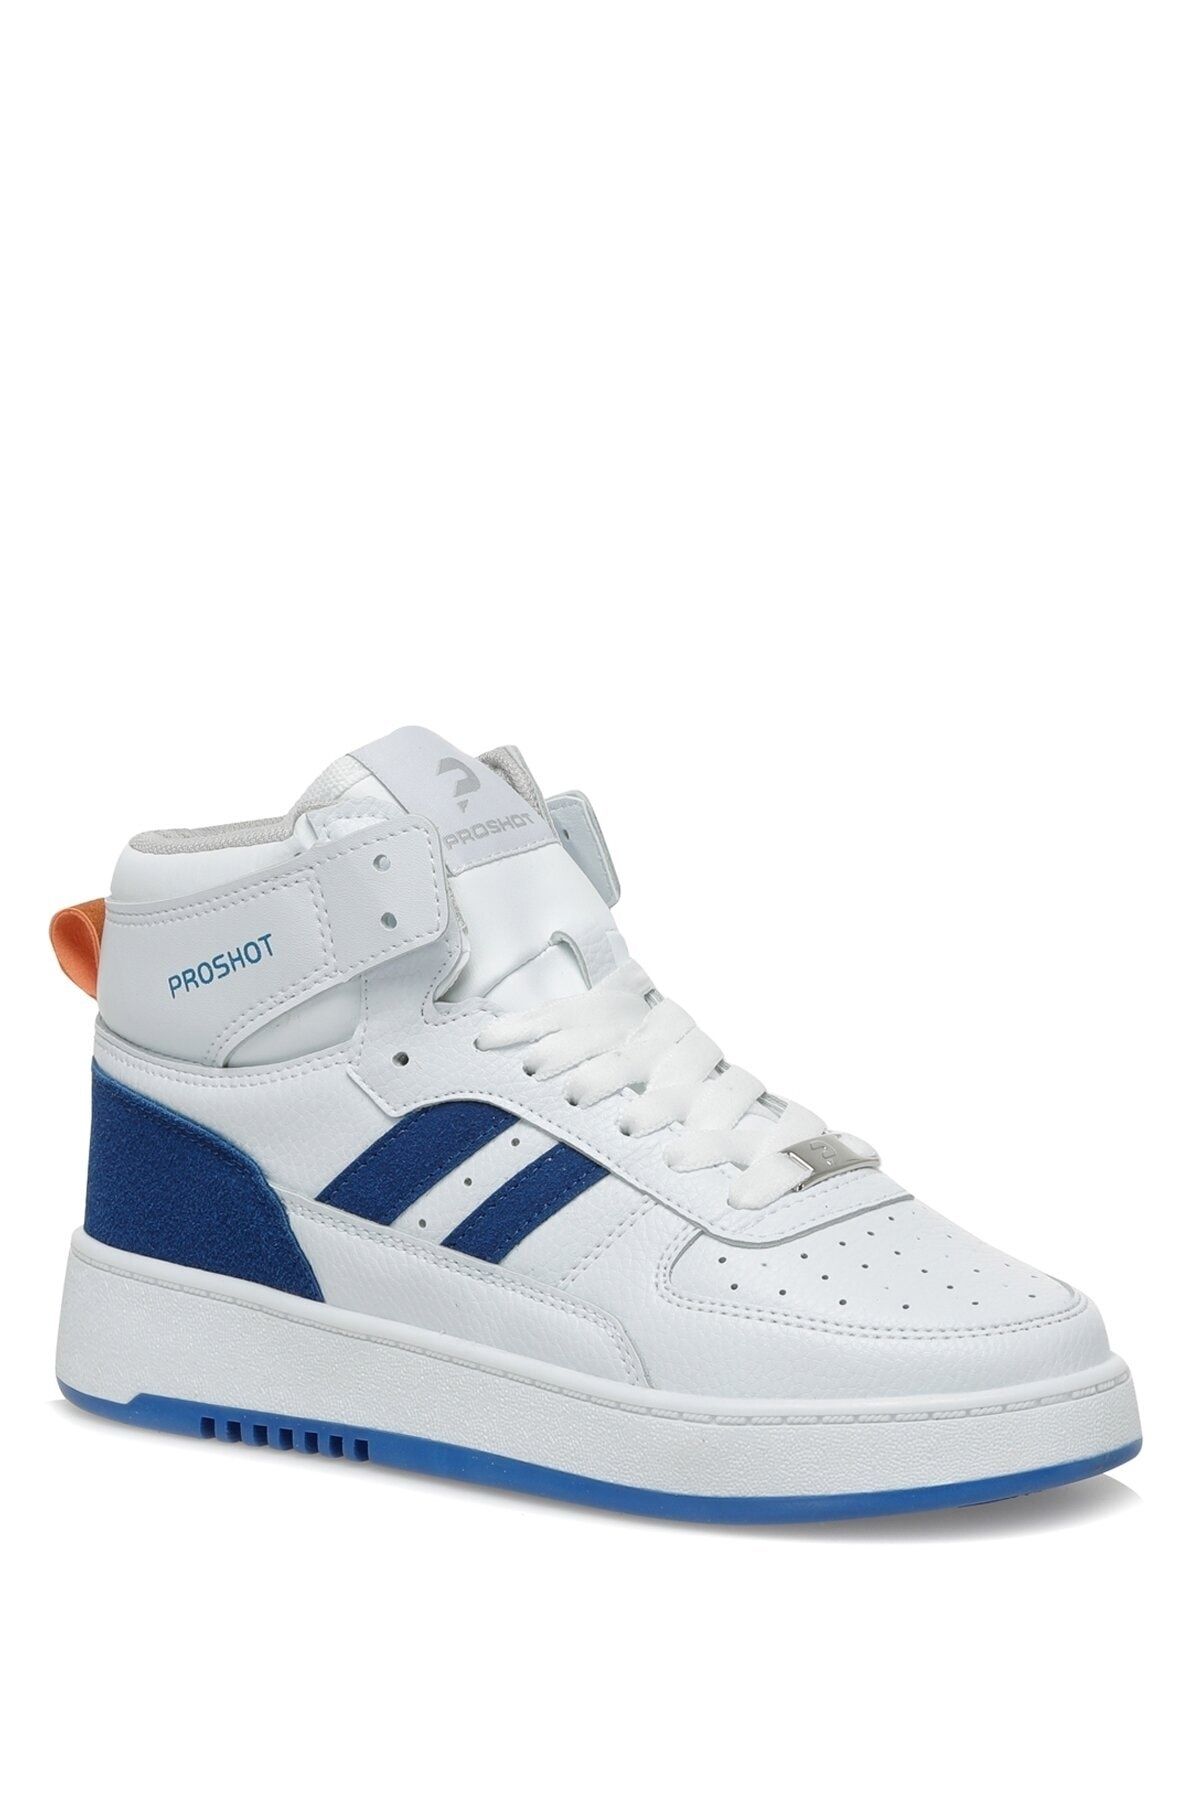 Proshot Ps155 Hı 2pr Beyaz Erkek Çocuk High Sneaker